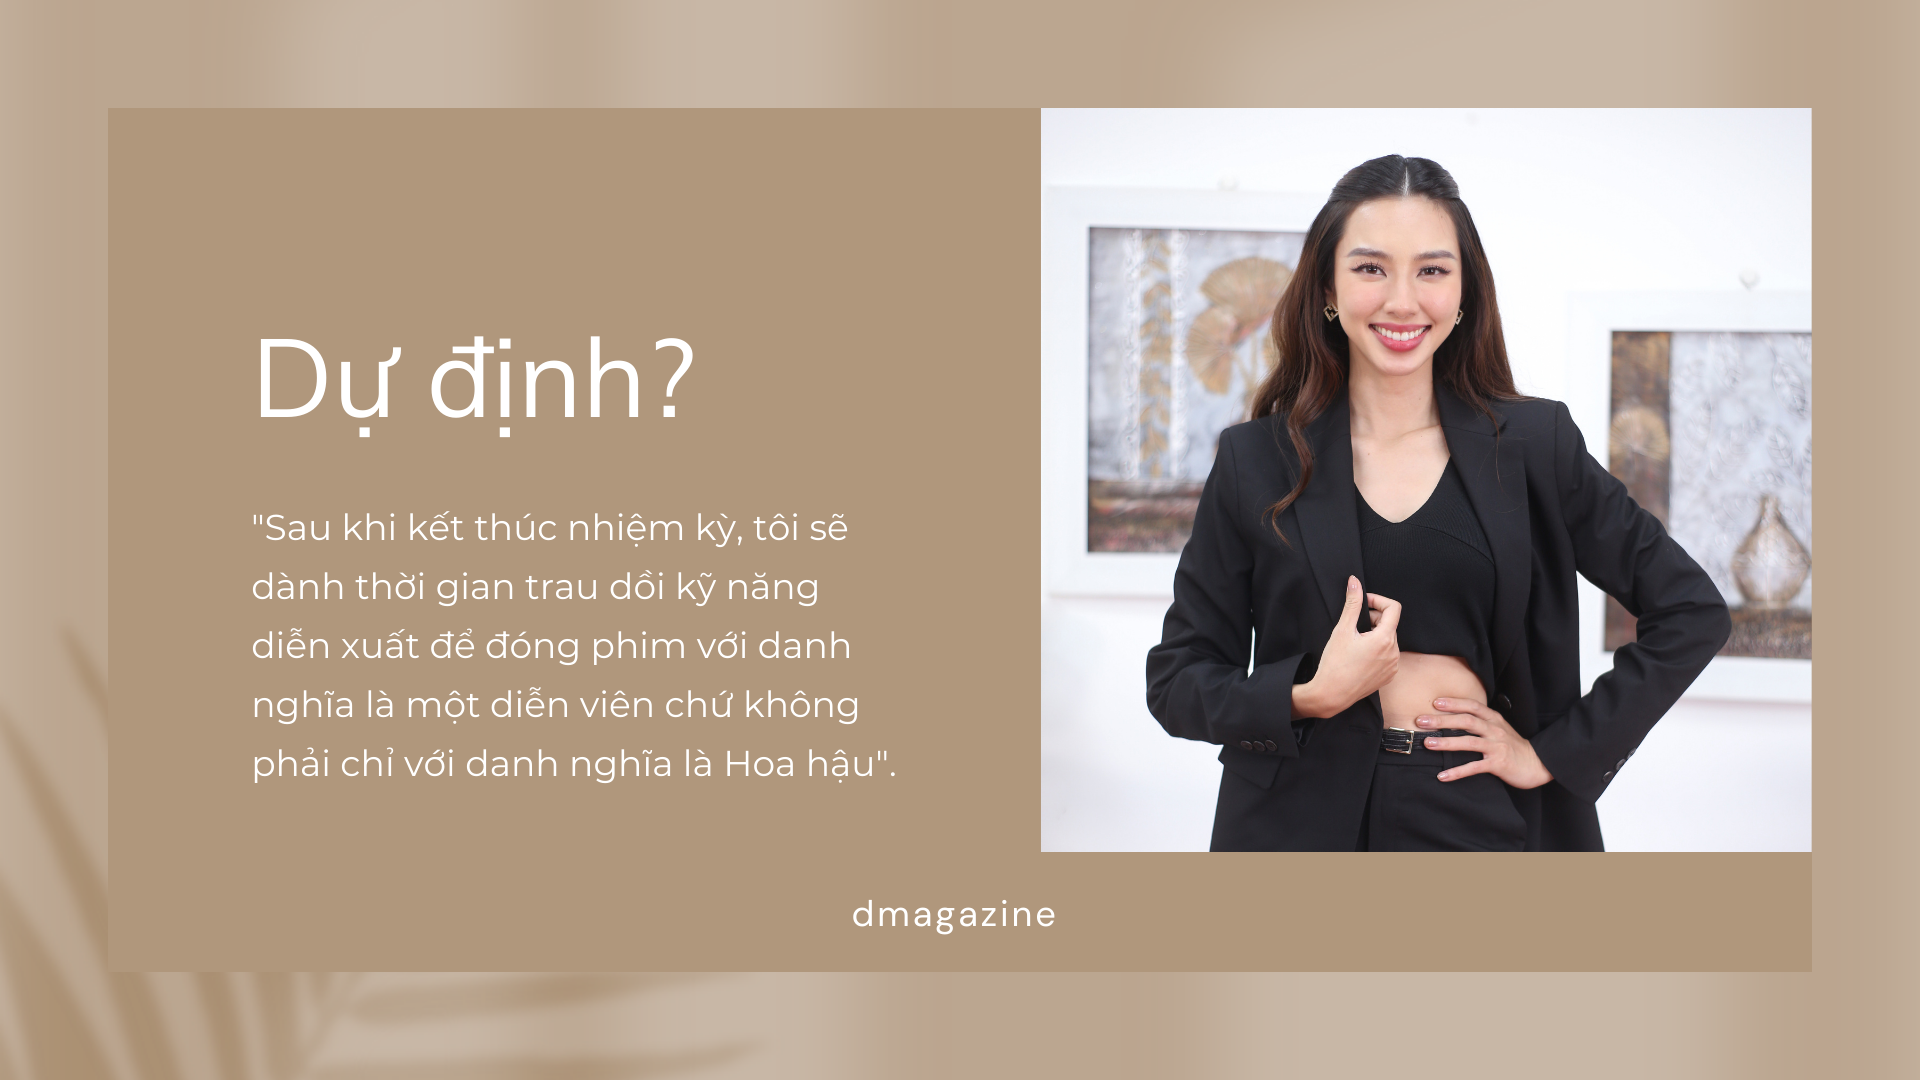 Hoa hậu Thùy Tiên: Nhóm anh Quang Linh cưng tôi như... cưng trứng